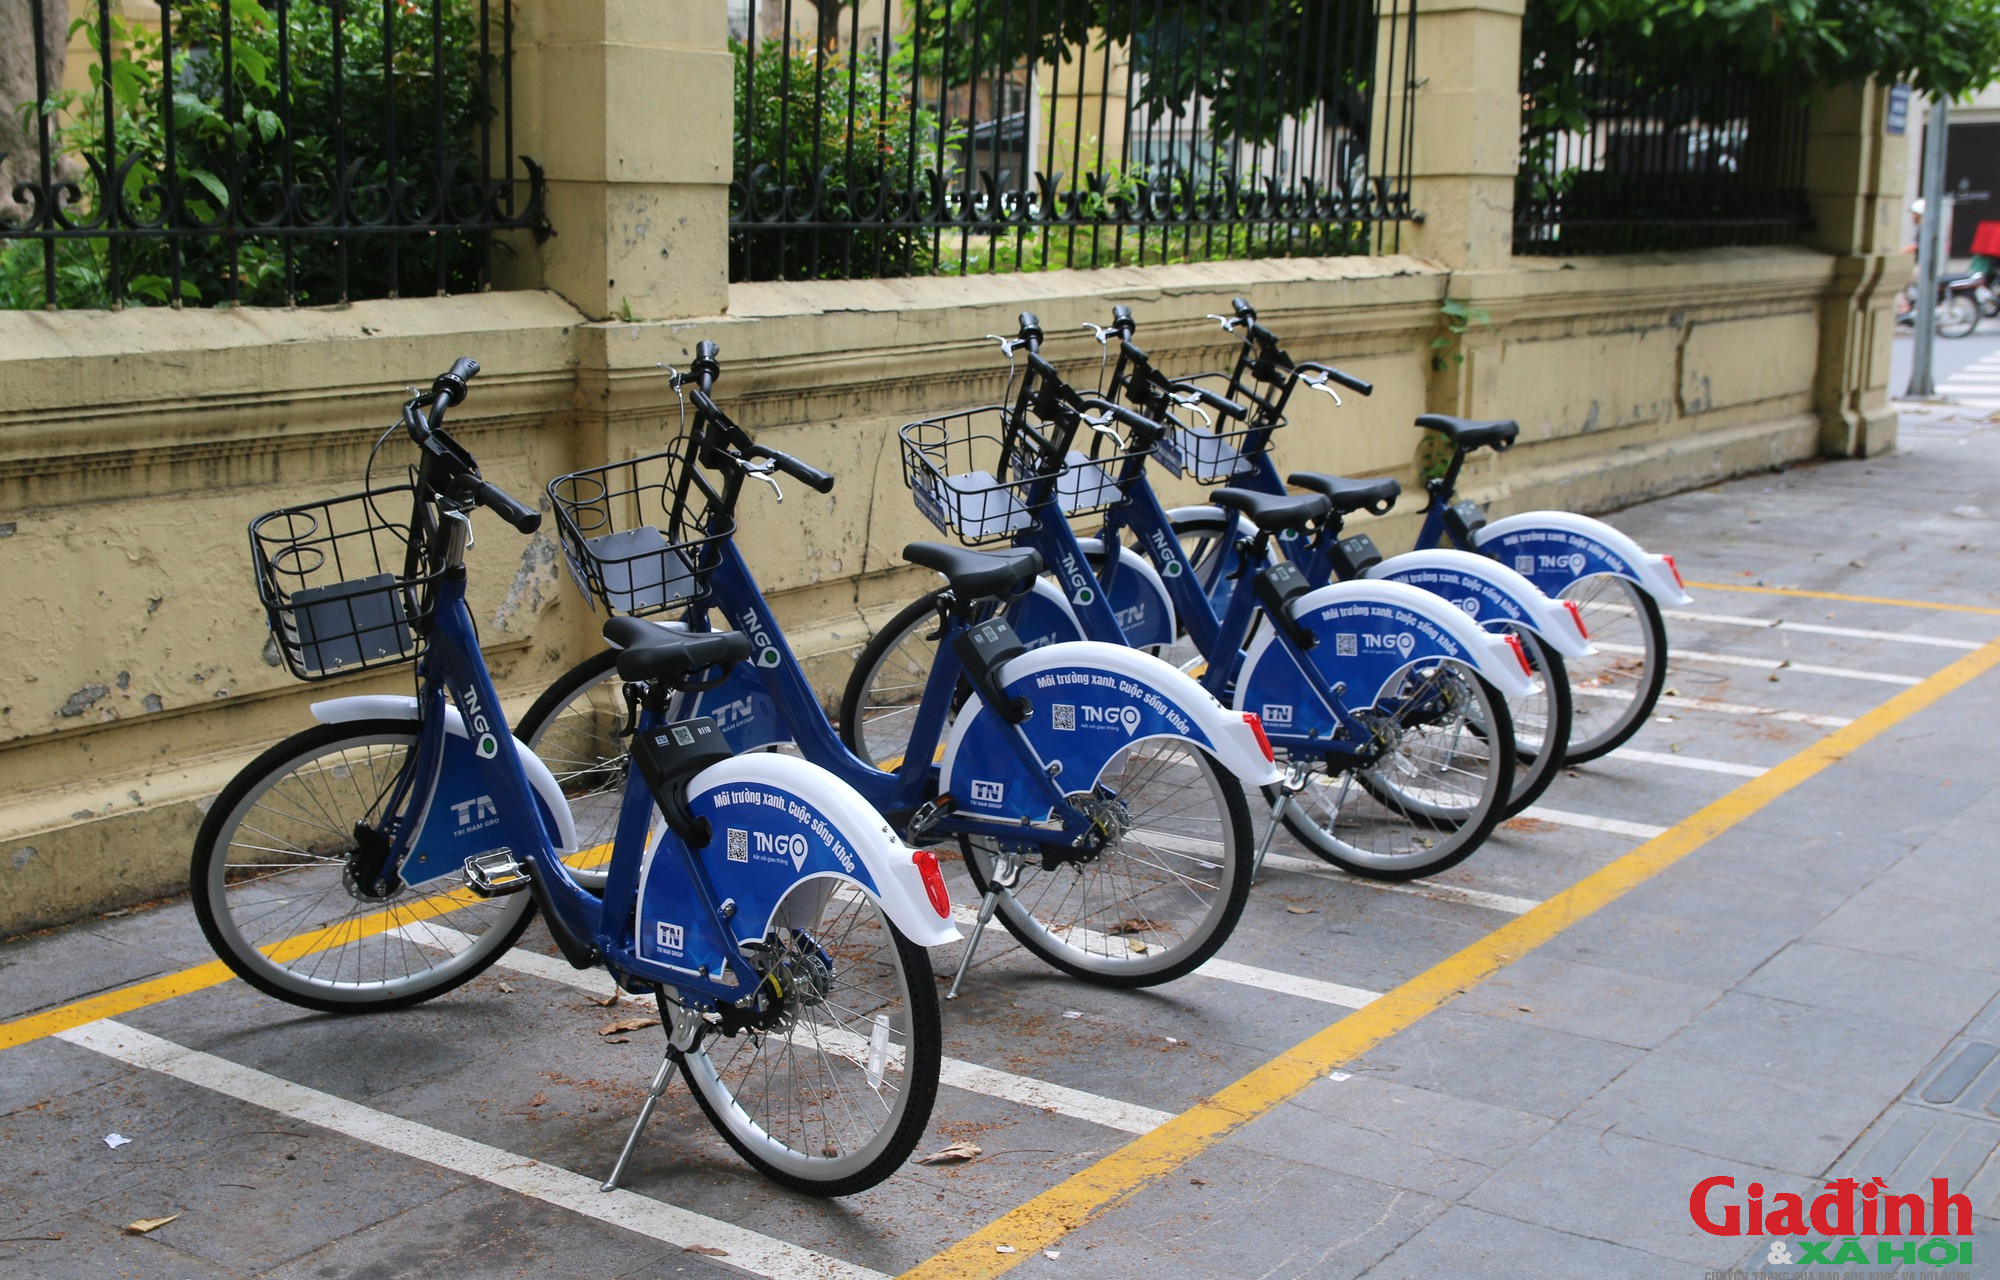 Dịch vụ xe đạp công cộng được triển khai tại Hà Nội và kỳ vọng thay đổi thói quen tham gia giao thông - Ảnh 7.